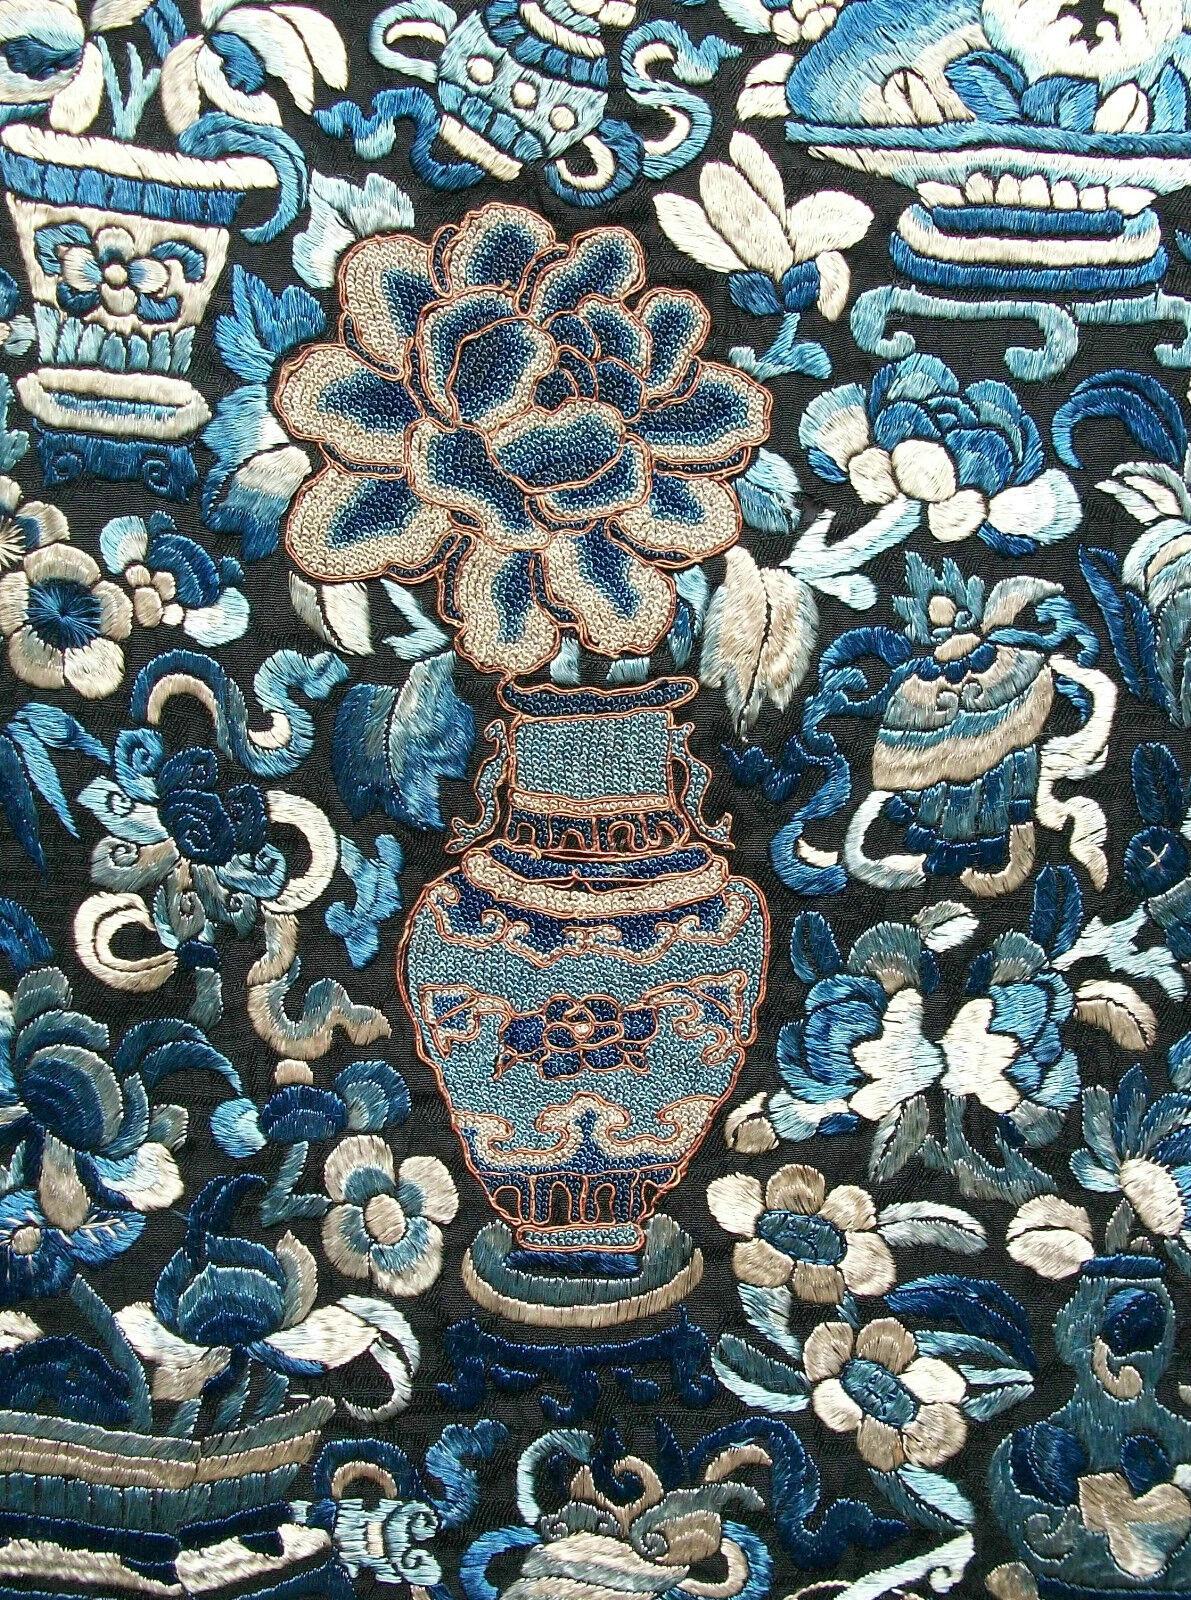 Antike feine Qualität - Qing-Dynastie - verboten oder Samenstich Seidenstickerei Panel - Metallic und Seidenfäden - dicht gepackt Stickerei auf einem leichten Damast Muster Seide - Mitternachtsblau / schwarz in der Farbe - China - 19.